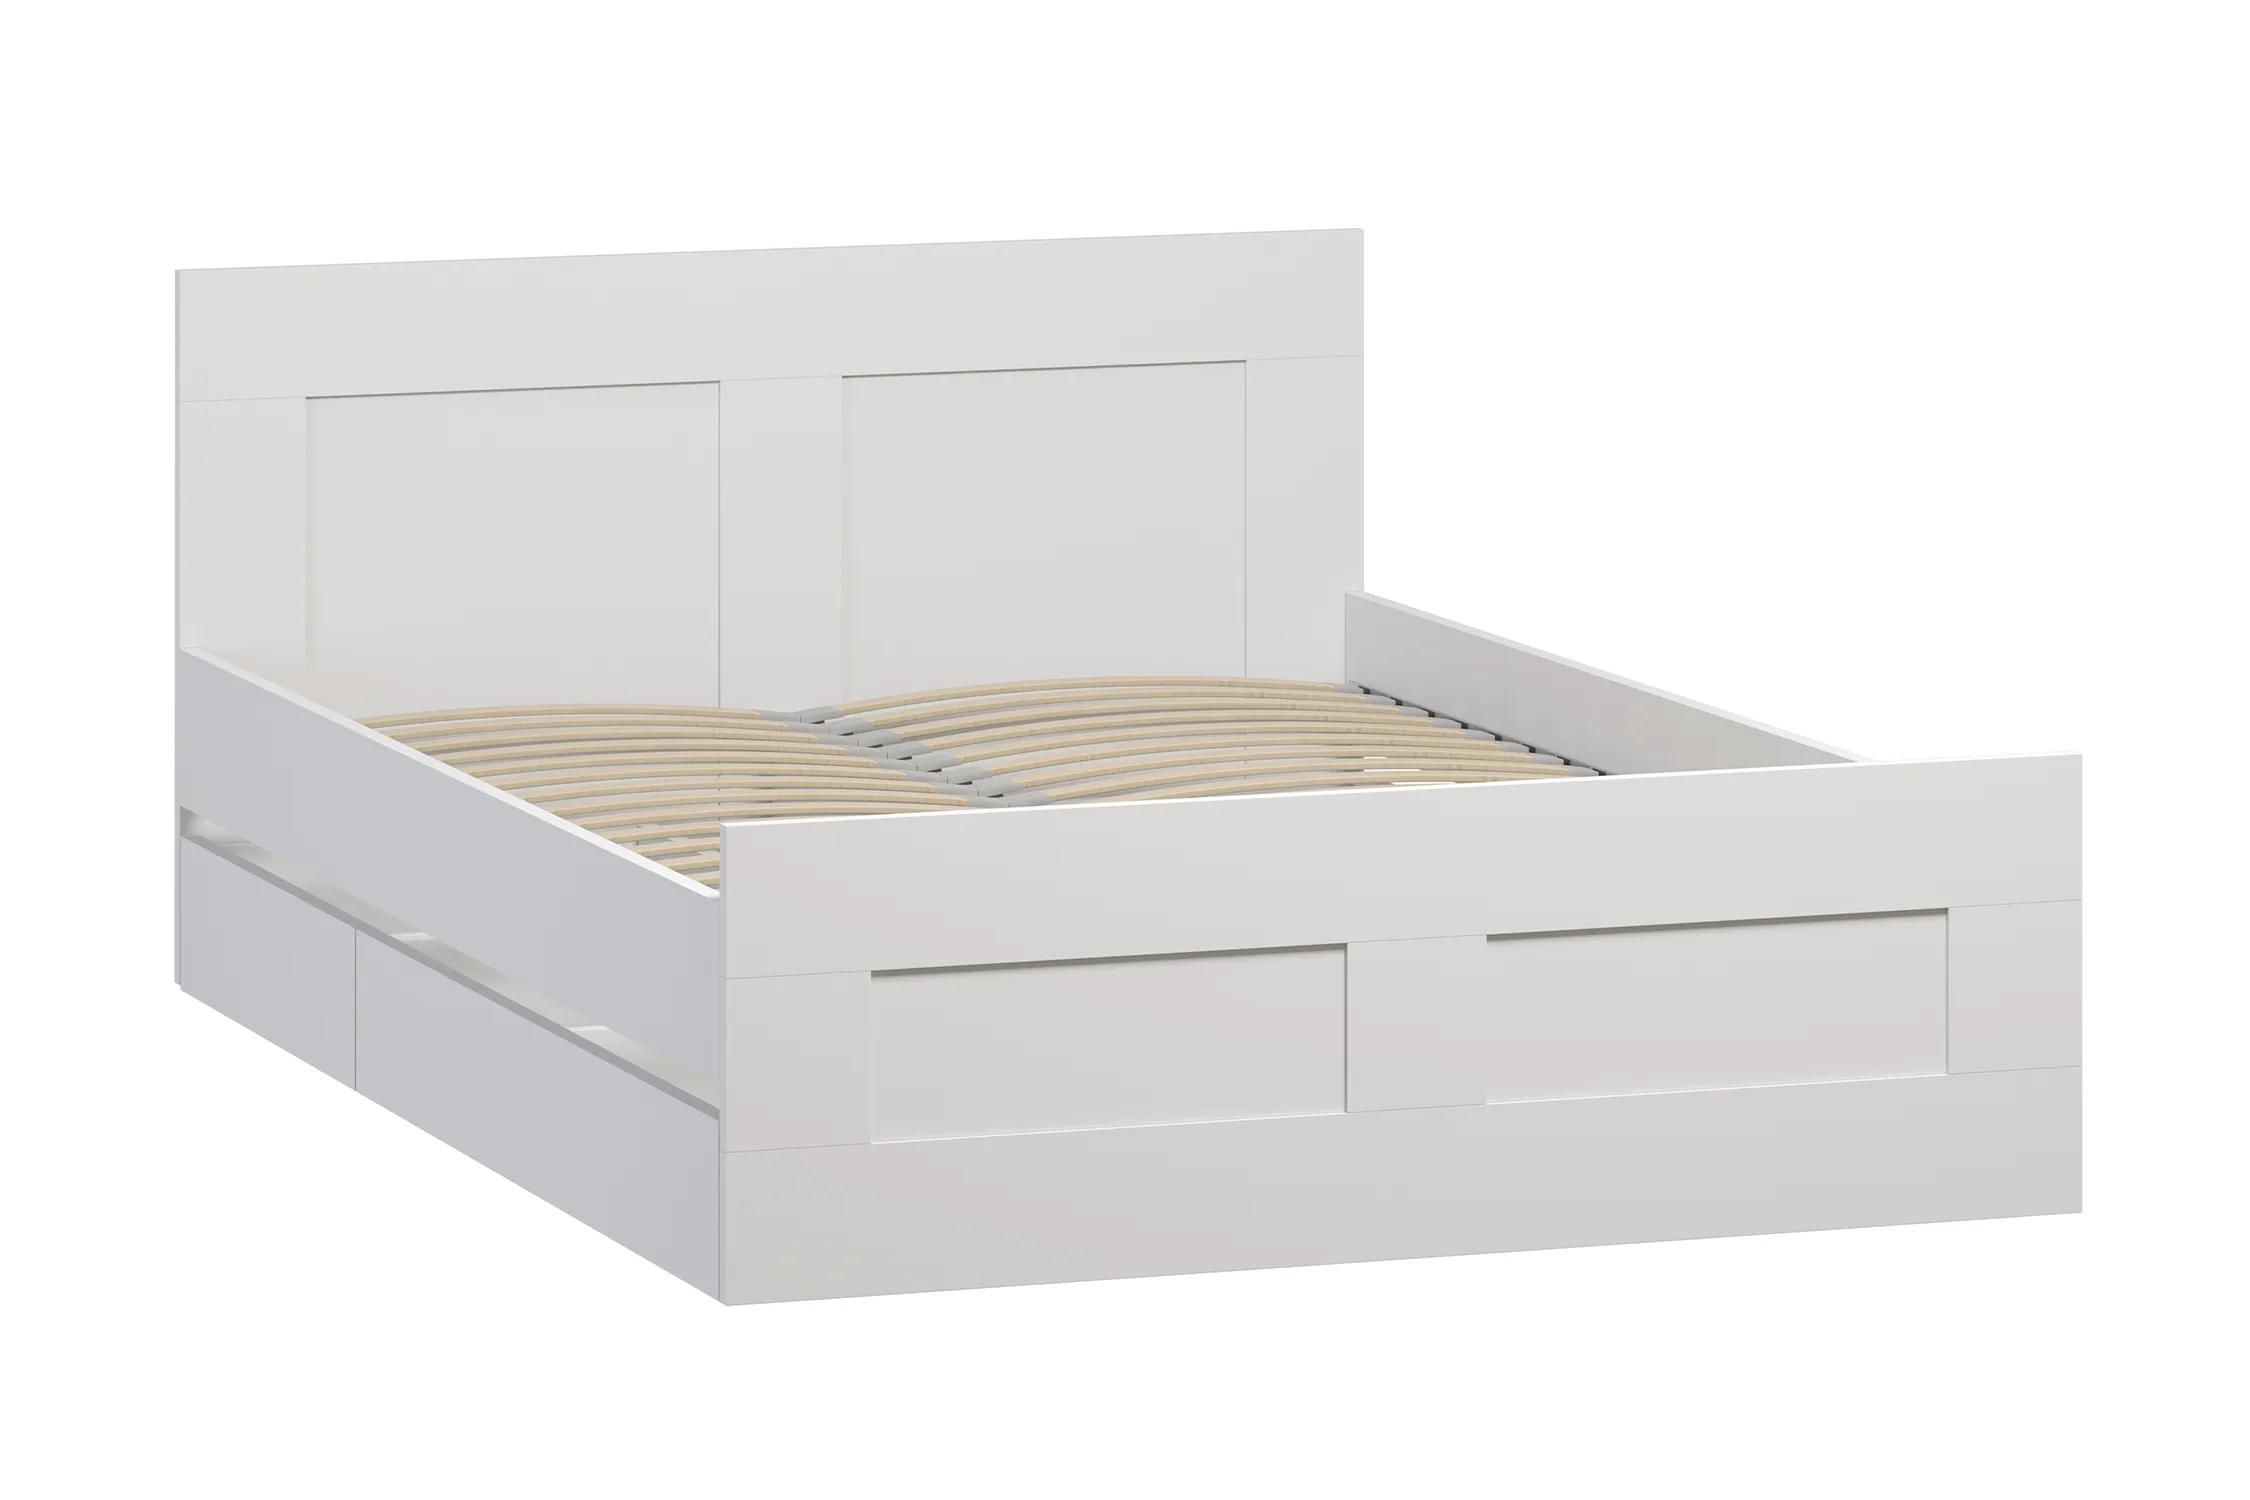 Кровать двуспальная Сириус белая с ящиками